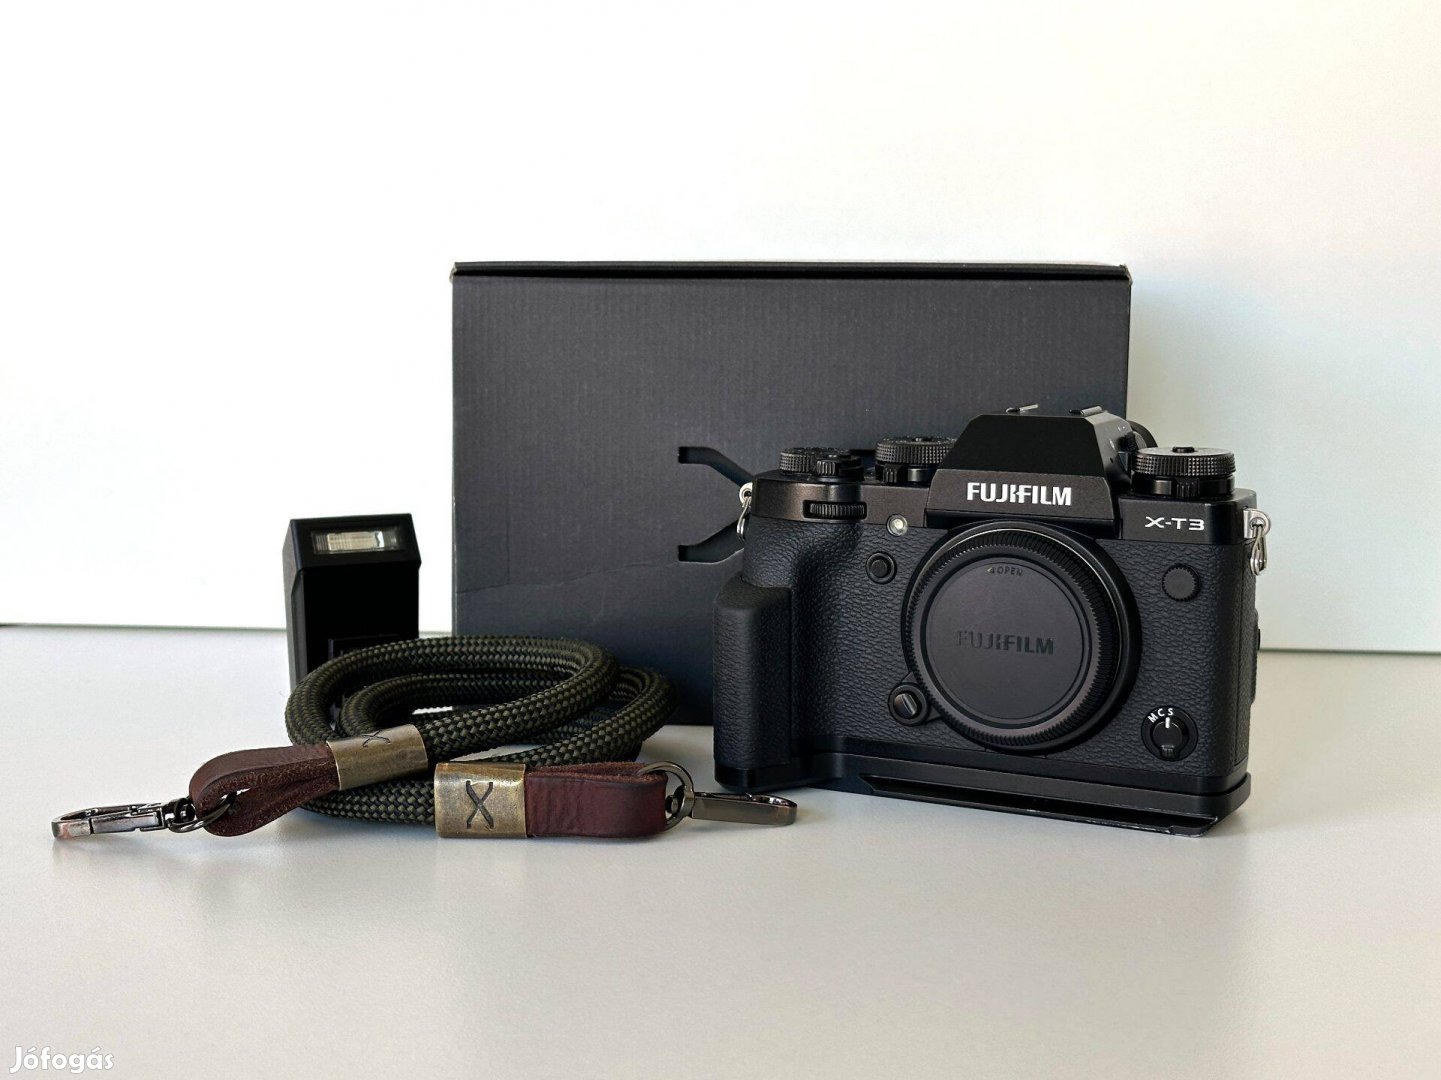 Fujifilm X-T3 fényképezőgép, Fujinon, Viltox, Sigma objektívek, vakuk